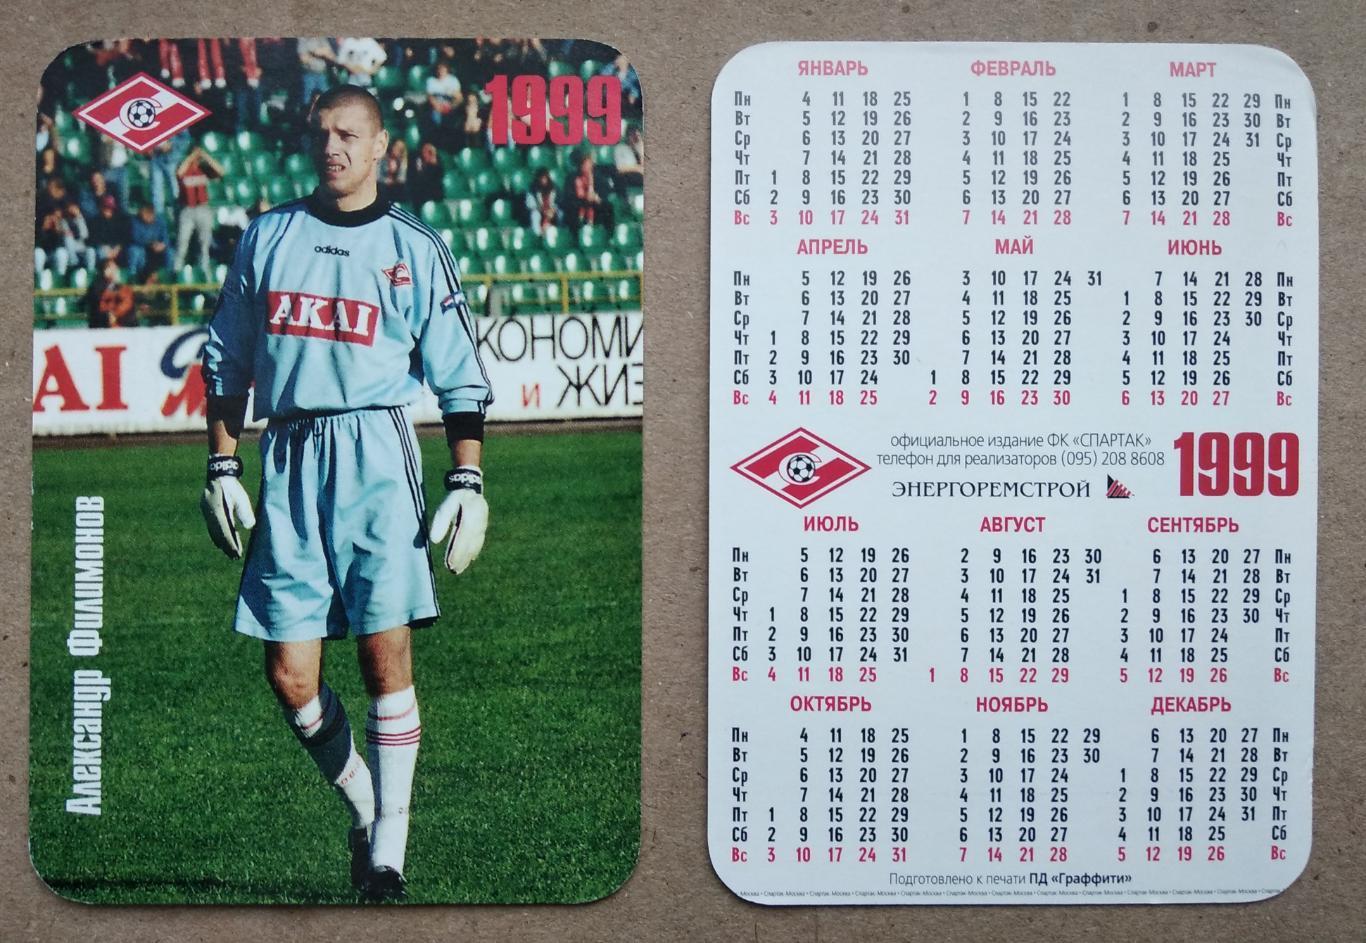 Спартак Москва - Филимонов , календарик на 1999 год, официальное издание